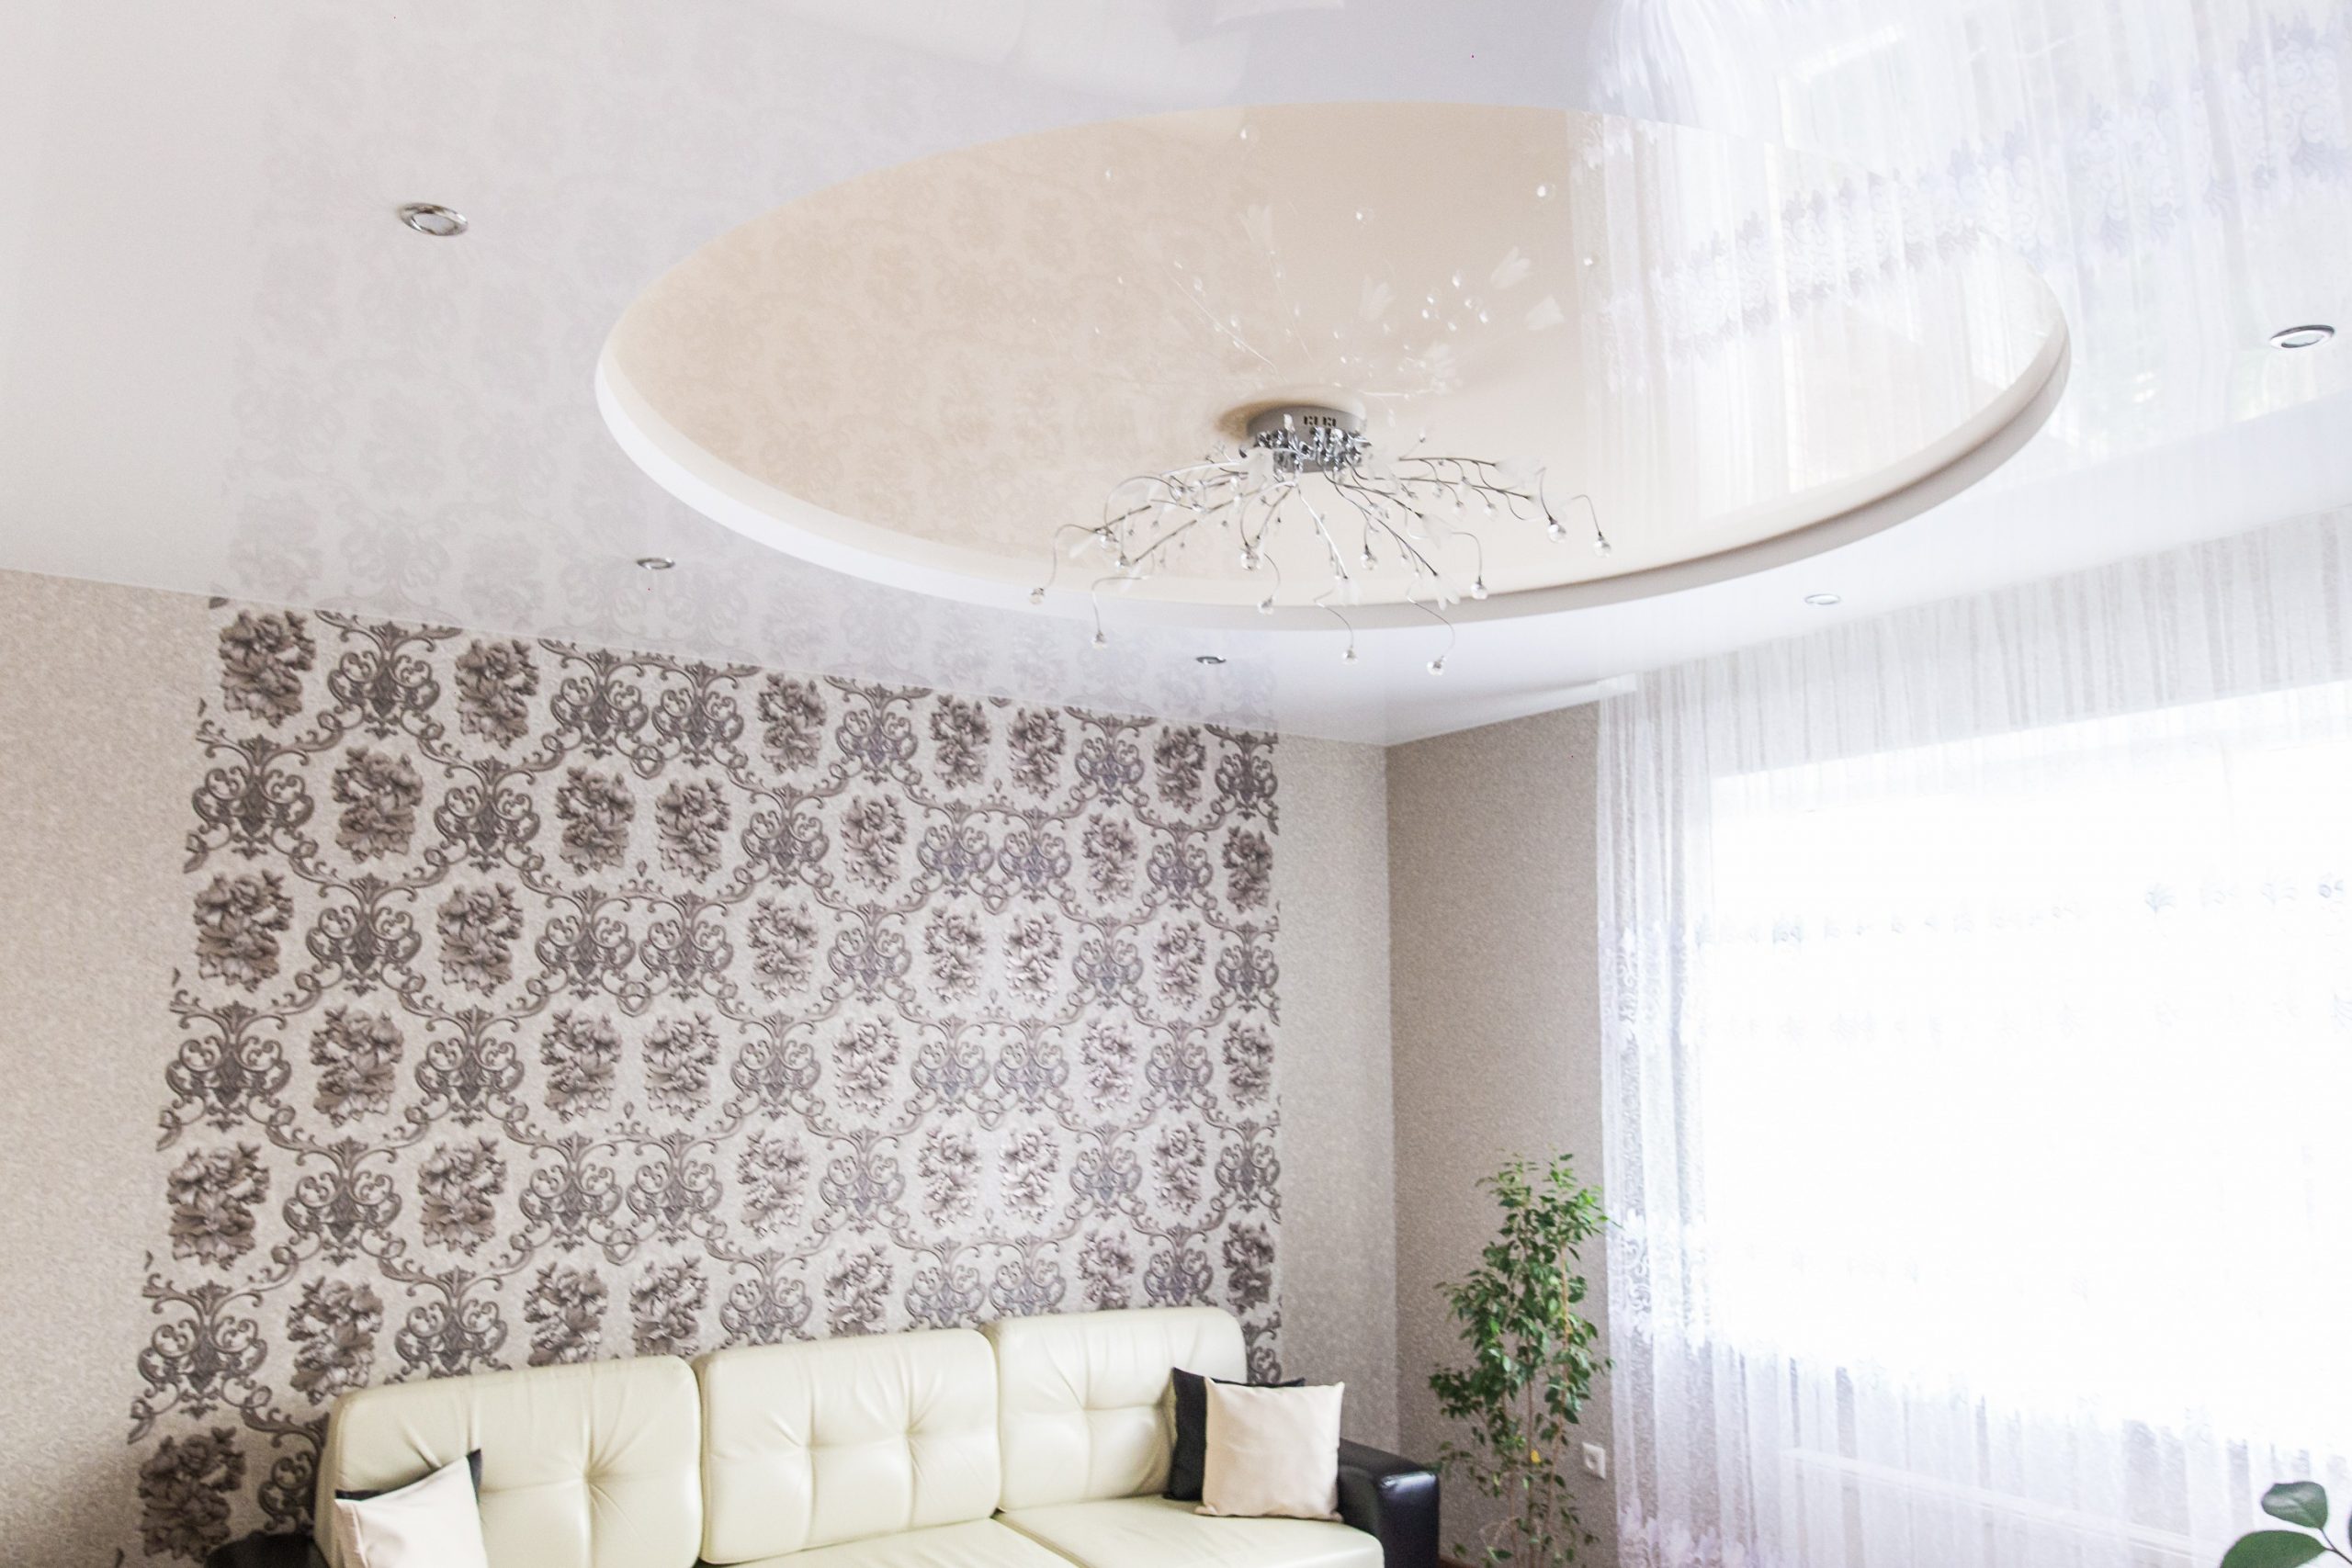 Двухуровневый натяжной потолок в гостиной с люстрой (3)